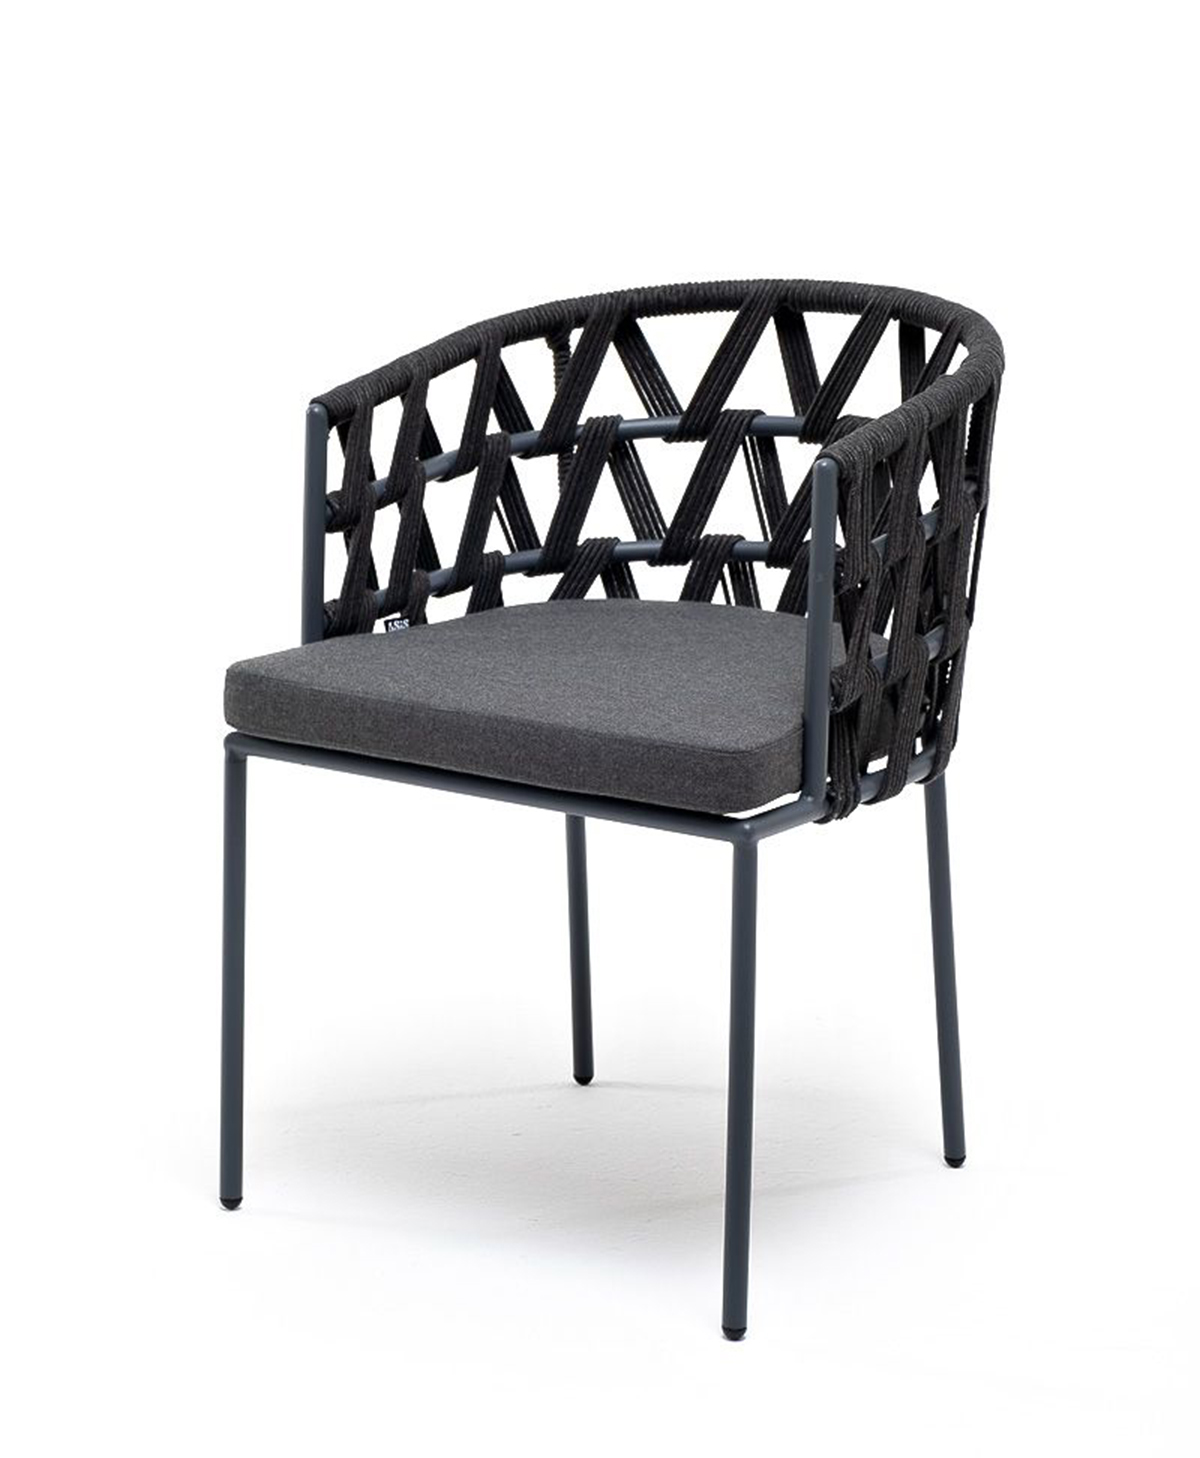 Плетеный стул из роупа Диего темно-серый плетеное кресло диего из роупа темно серое